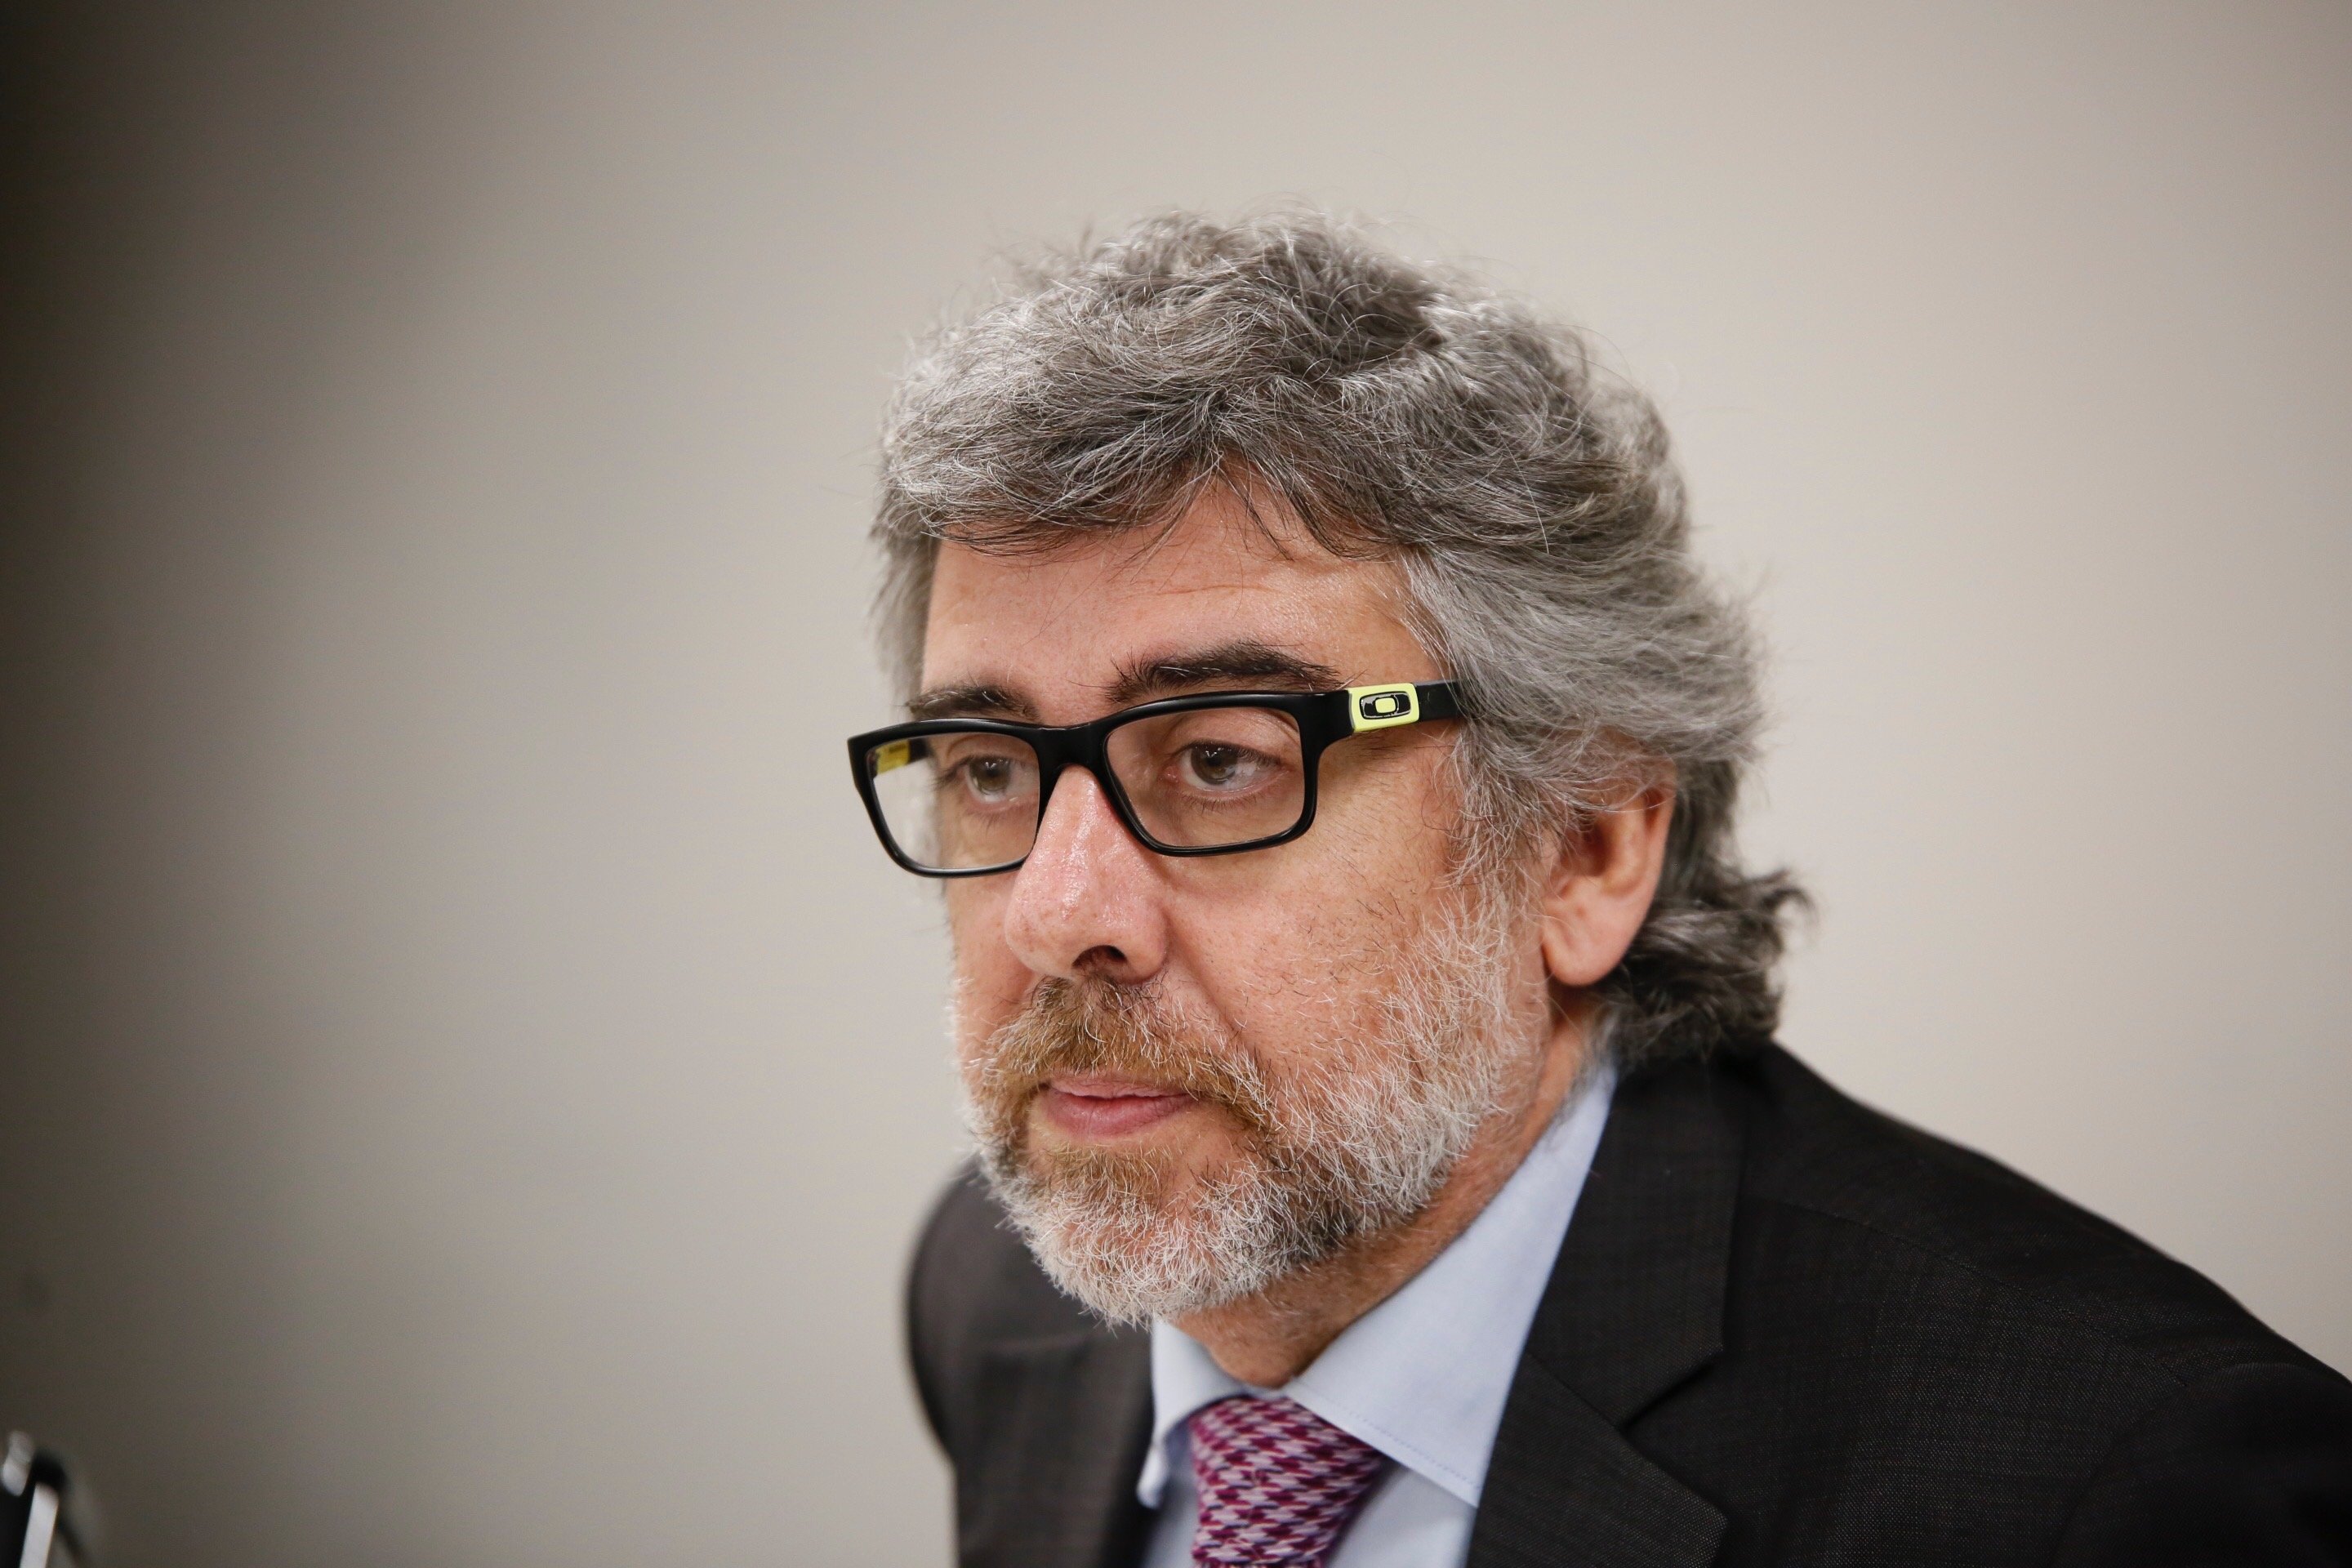 Calbot de l'advocat Jordi Pina al Cos Nacional de Policia